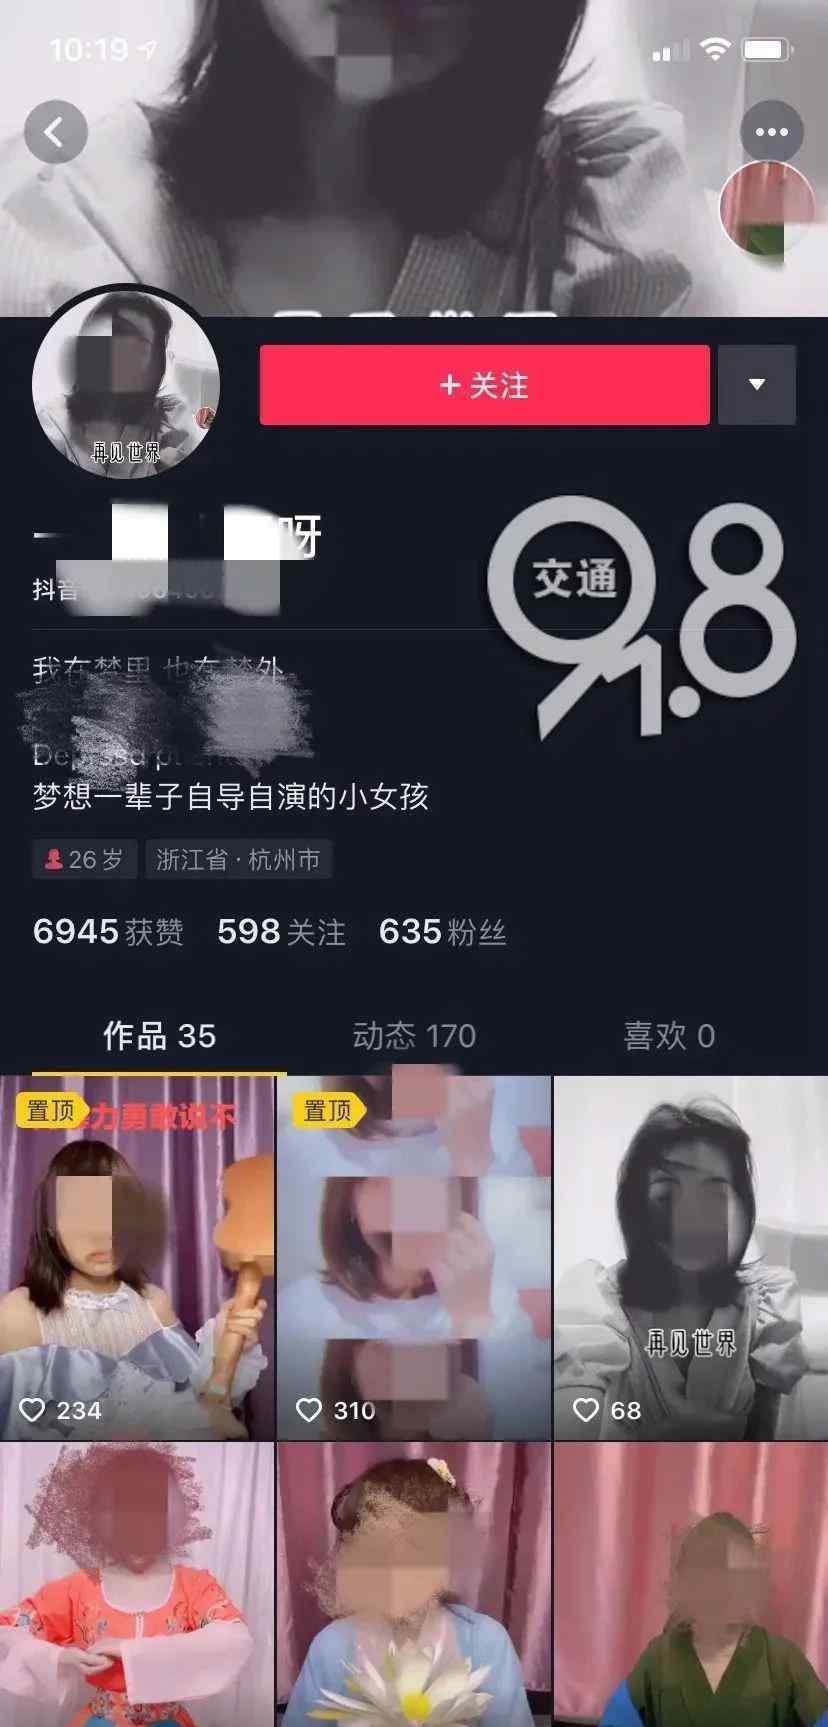 杭州抖音女主播直播自杀 吞30多颗安眠药